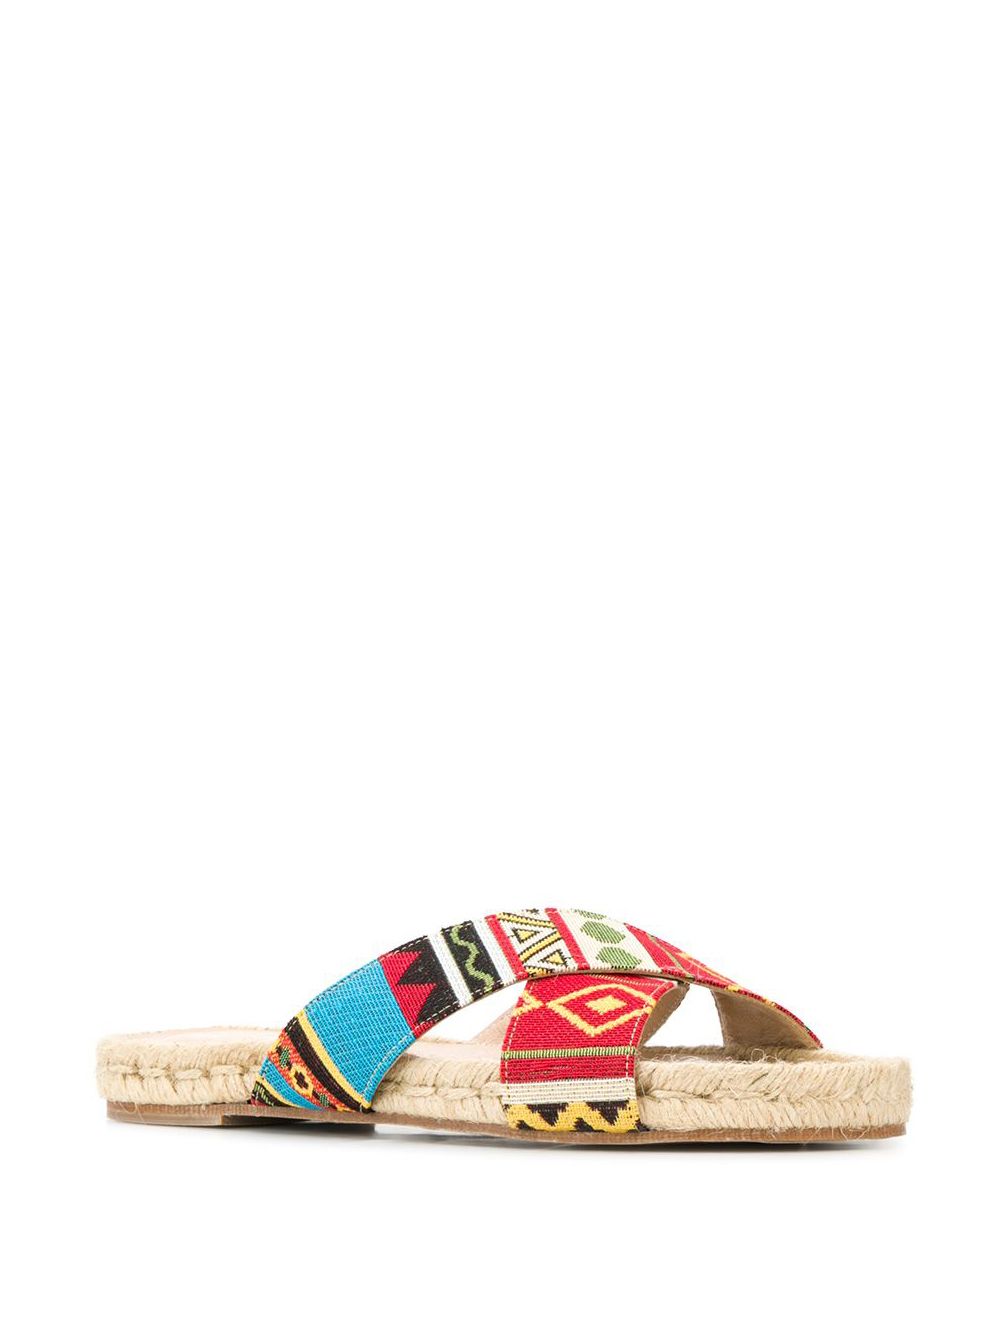 фото Solange жаккардовые сандалии Solange sandals